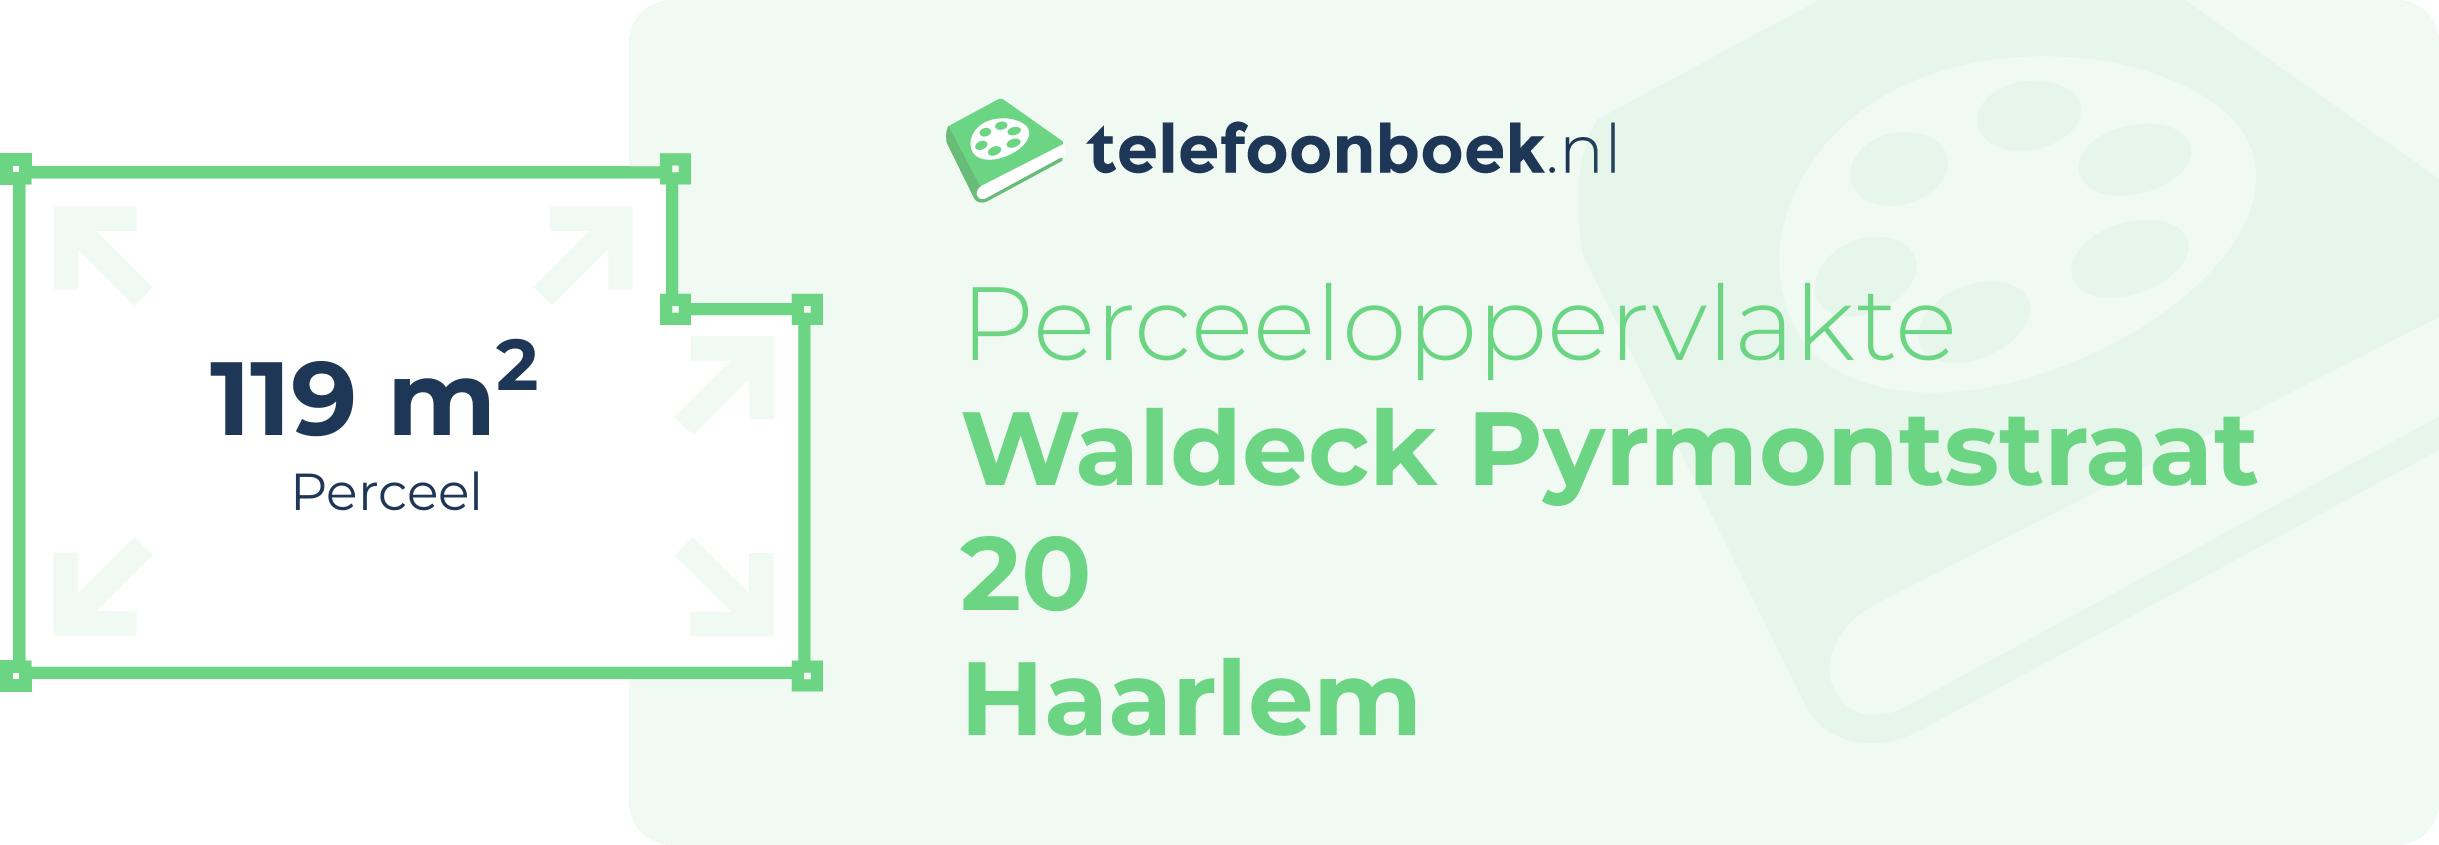 Perceeloppervlakte Waldeck Pyrmontstraat 20 Haarlem